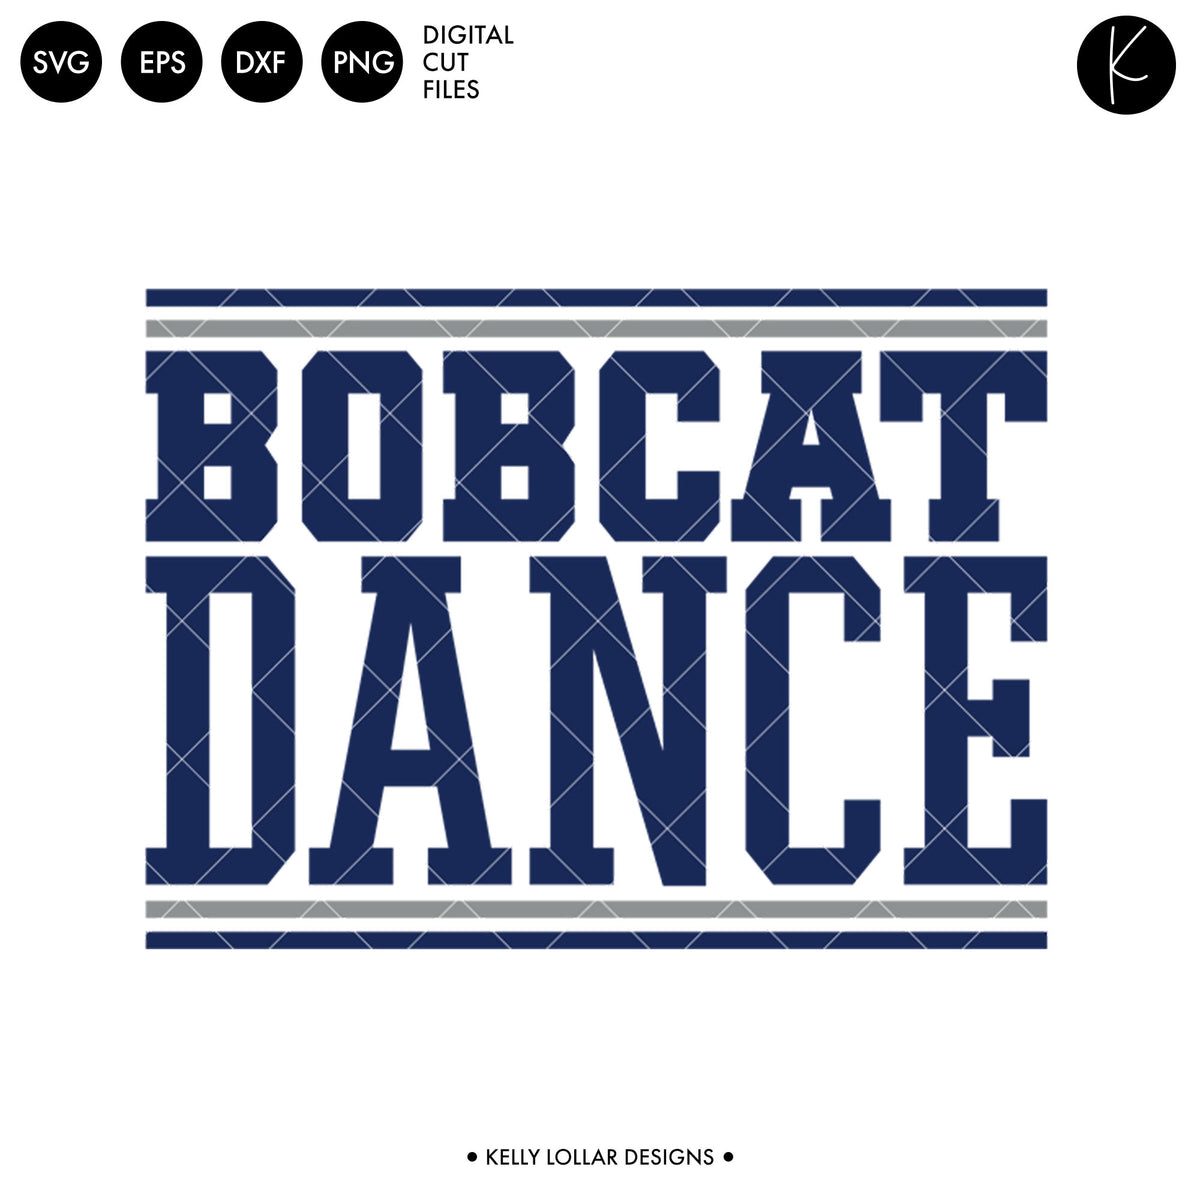 Bobcats Dance Bundle | SVG DXF EPS PNG Cut Files